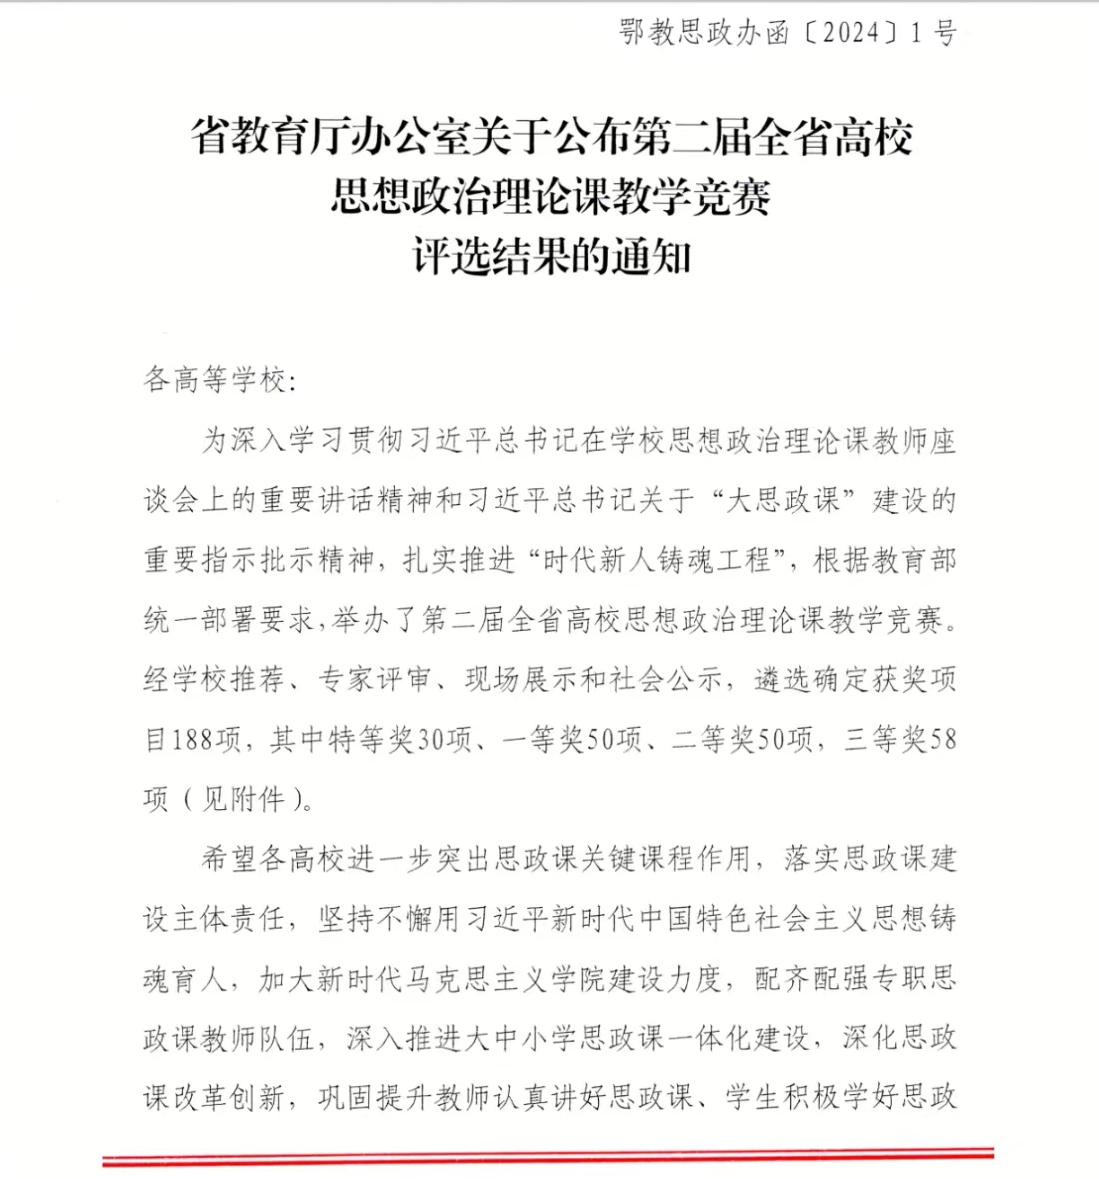 我院教师胡兆凌在湖北省第二届高校思想政治理论课教学竞赛中喜获一等奖